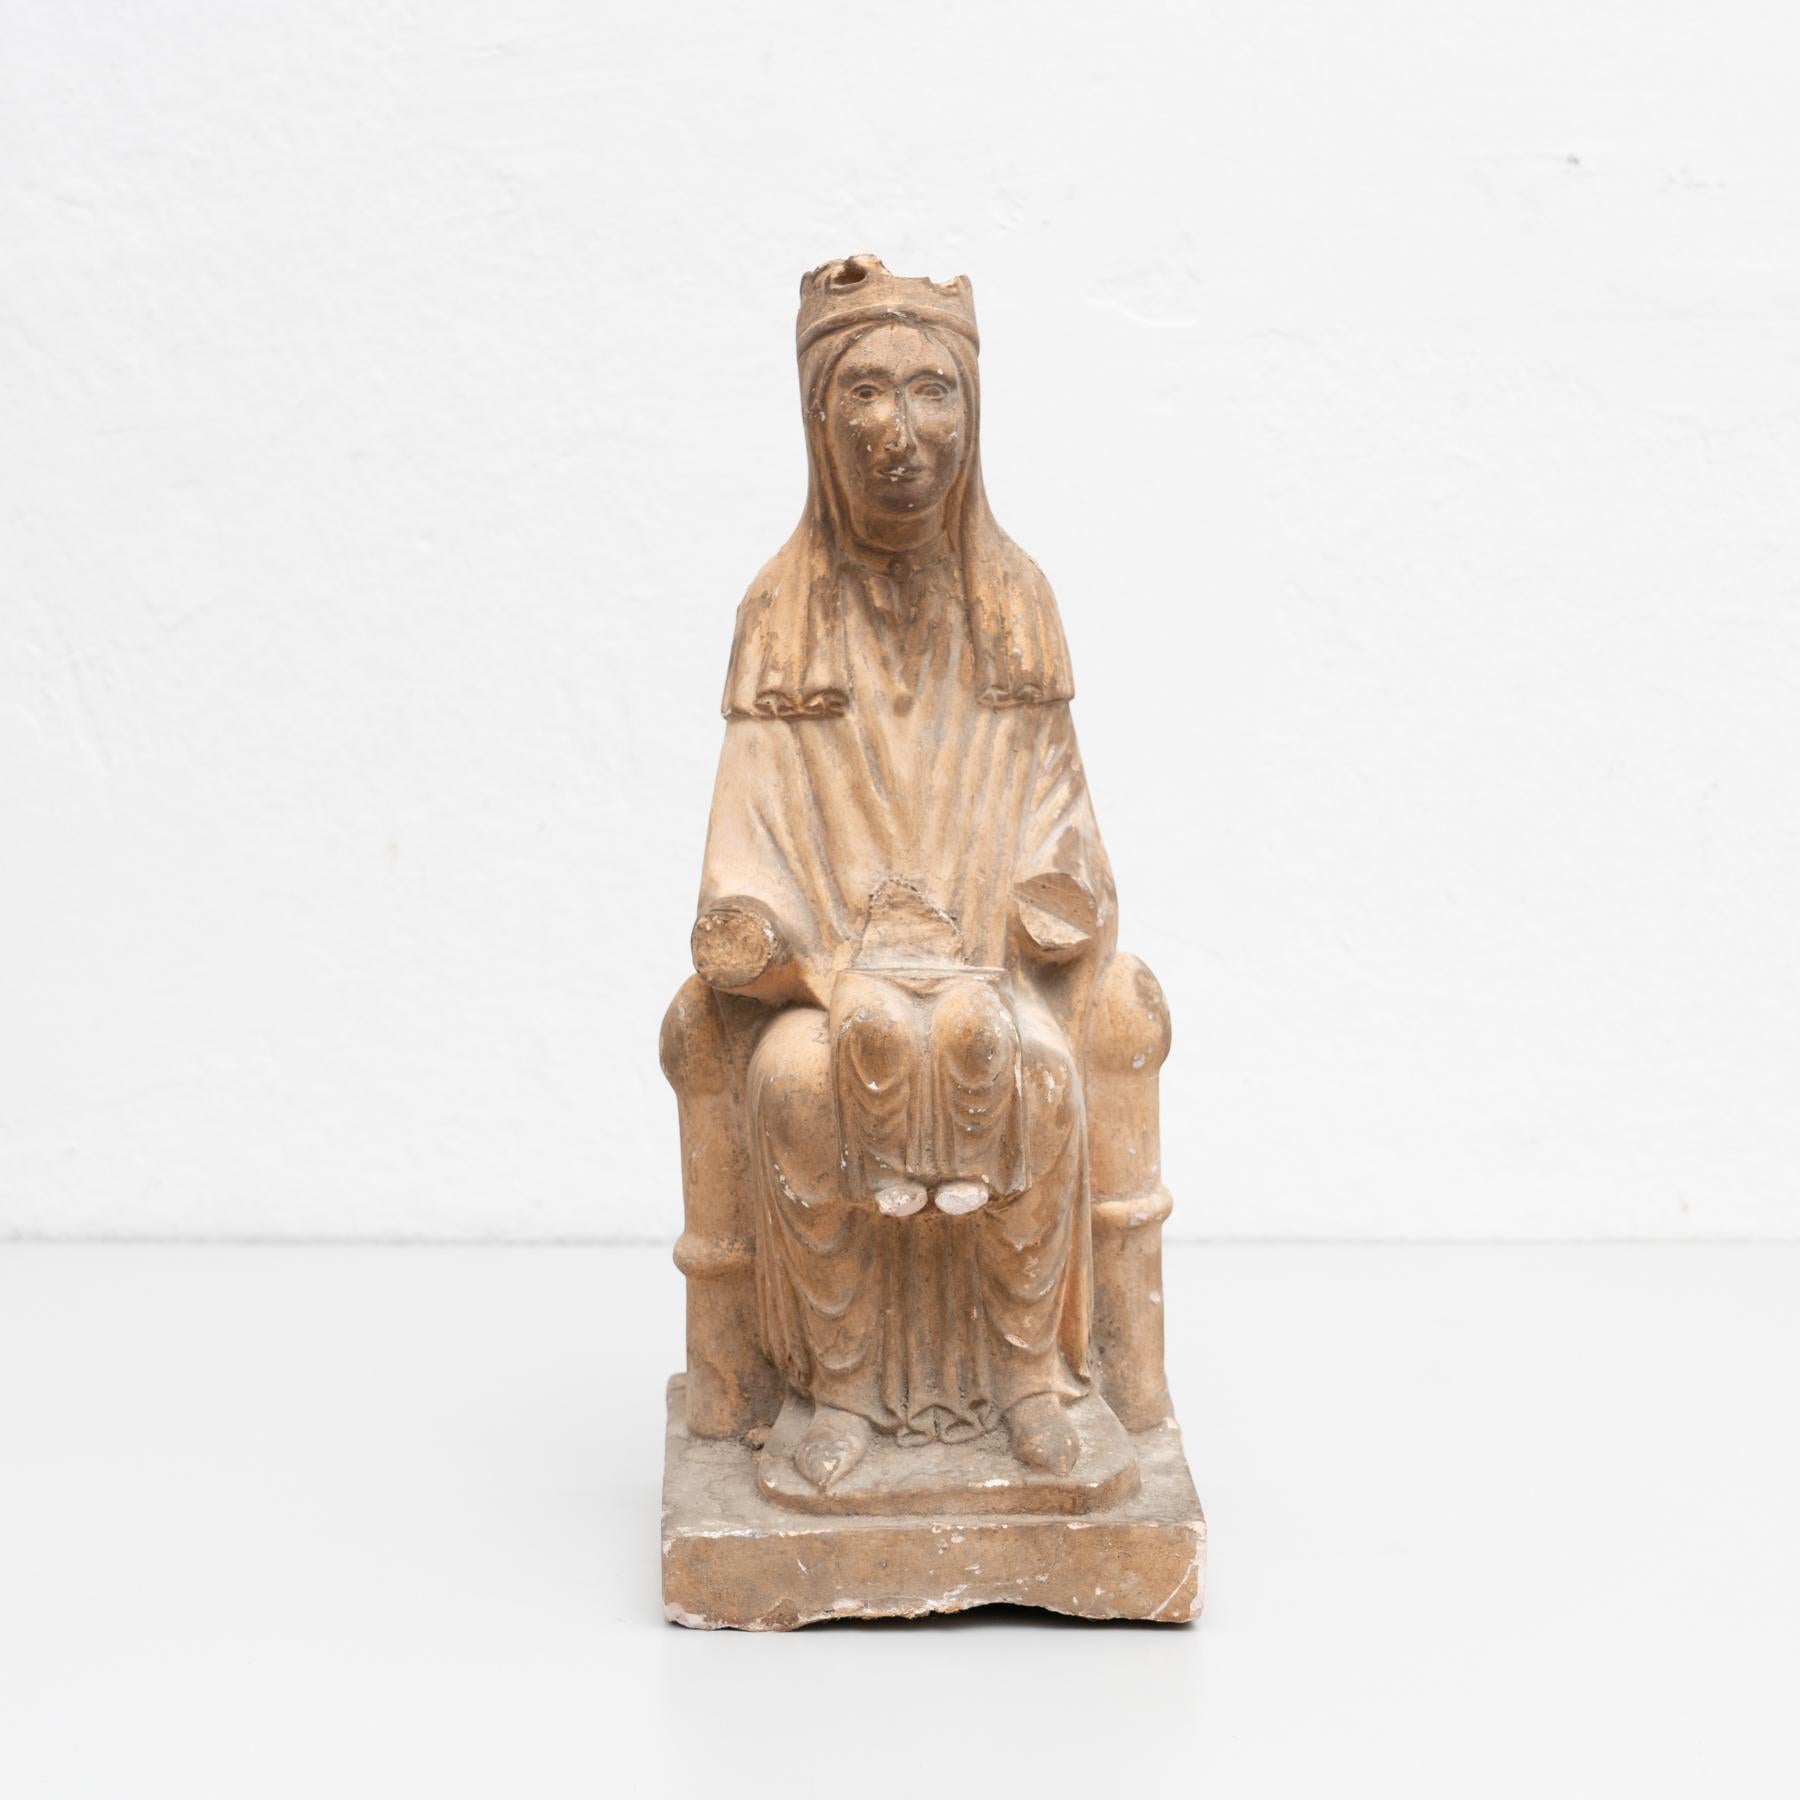 Traditionelle religiöse Gipsfigur einer Jungfrau.

In traditionellem katalanischen Atelier in Olot, Spanien, um 1950.

Originalzustand, mit geringen alters- und gebrauchsbedingten Gebrauchsspuren, die eine schöne Patina